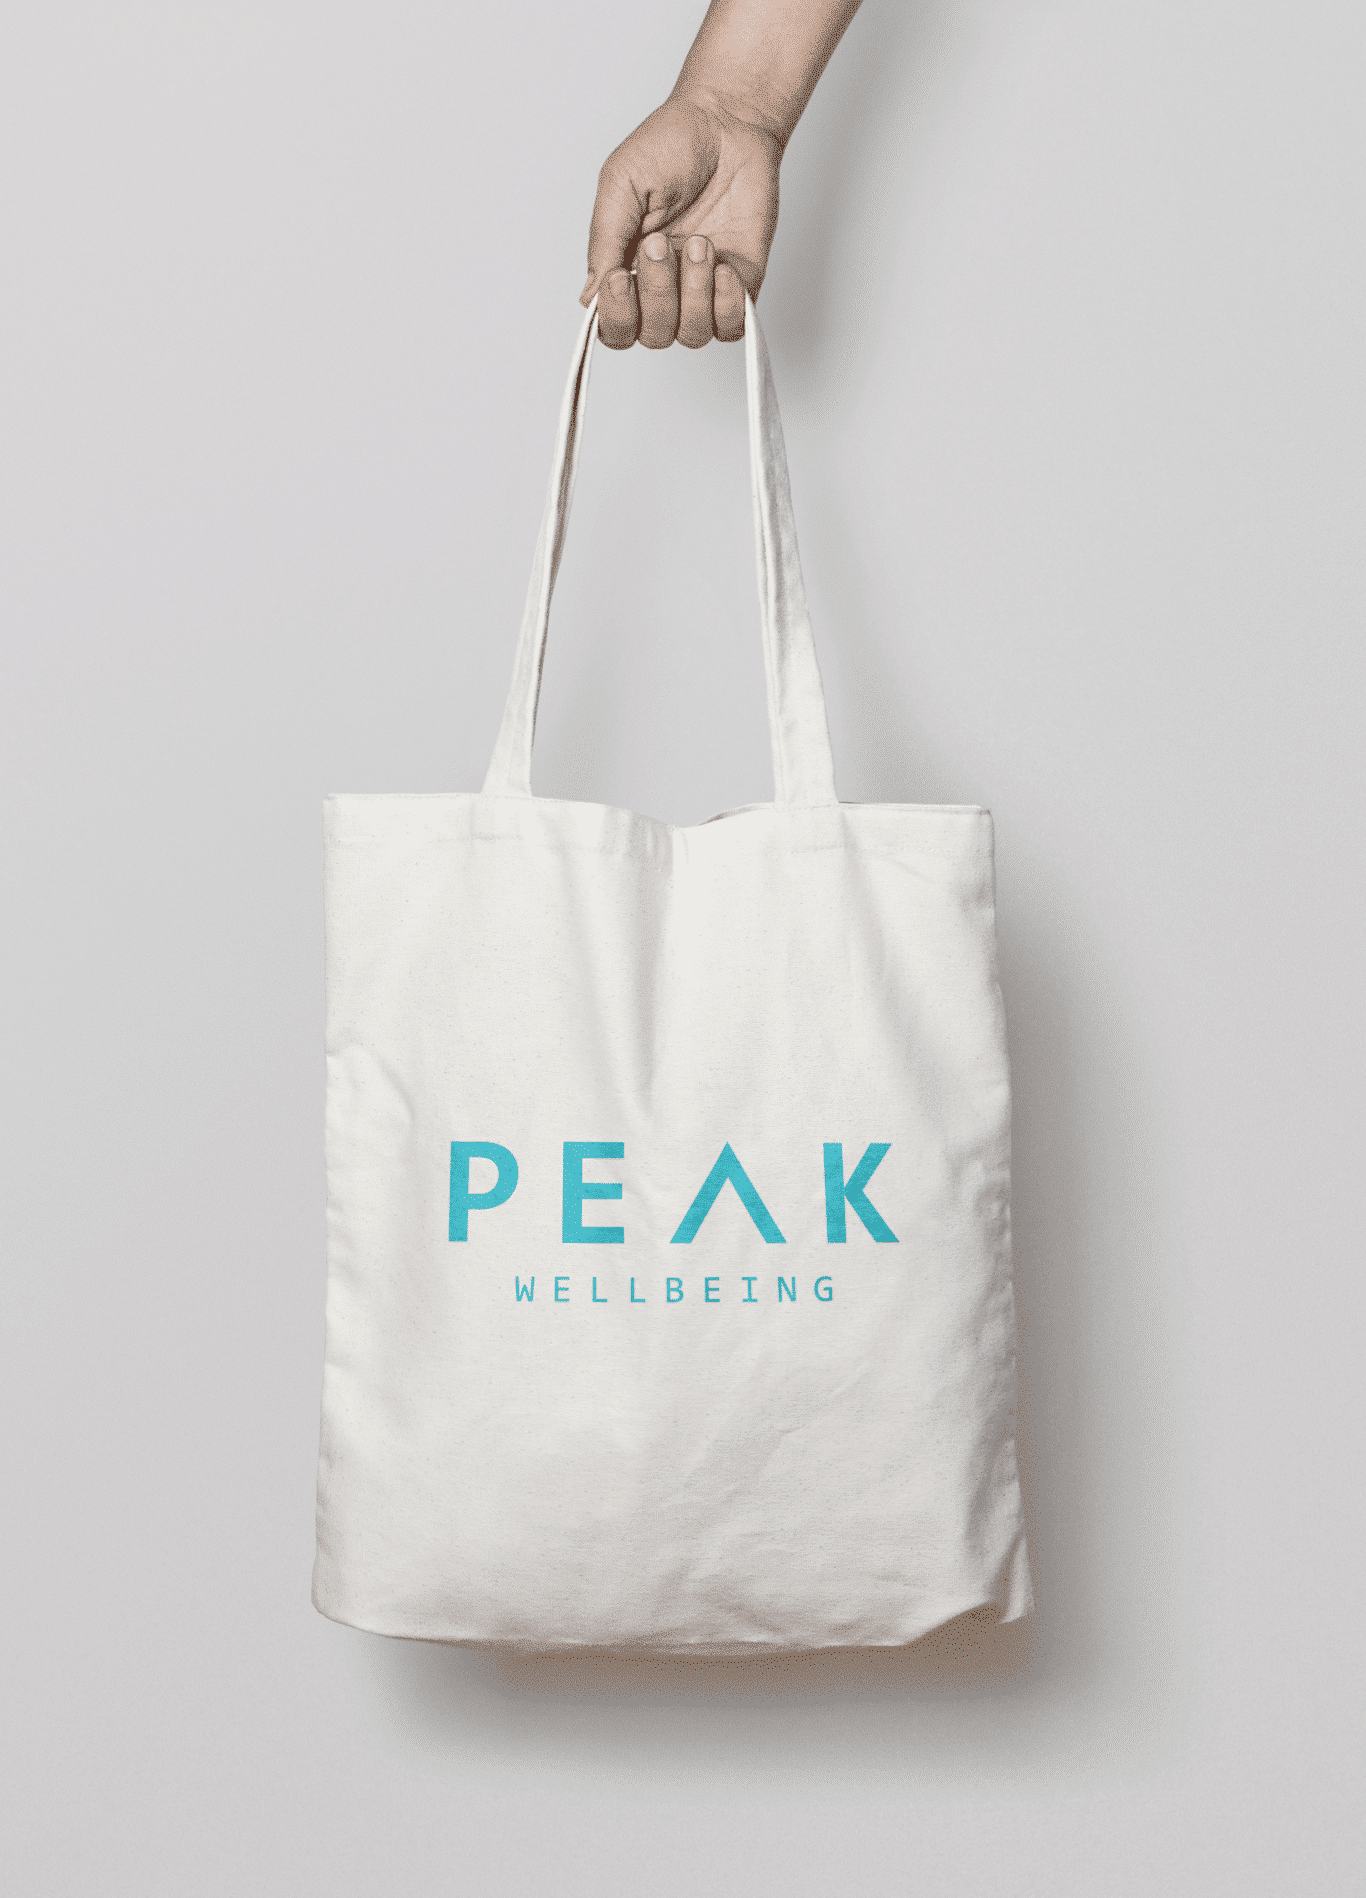 Rebrand - Peak Wellbeing - Tote Bag Mockup